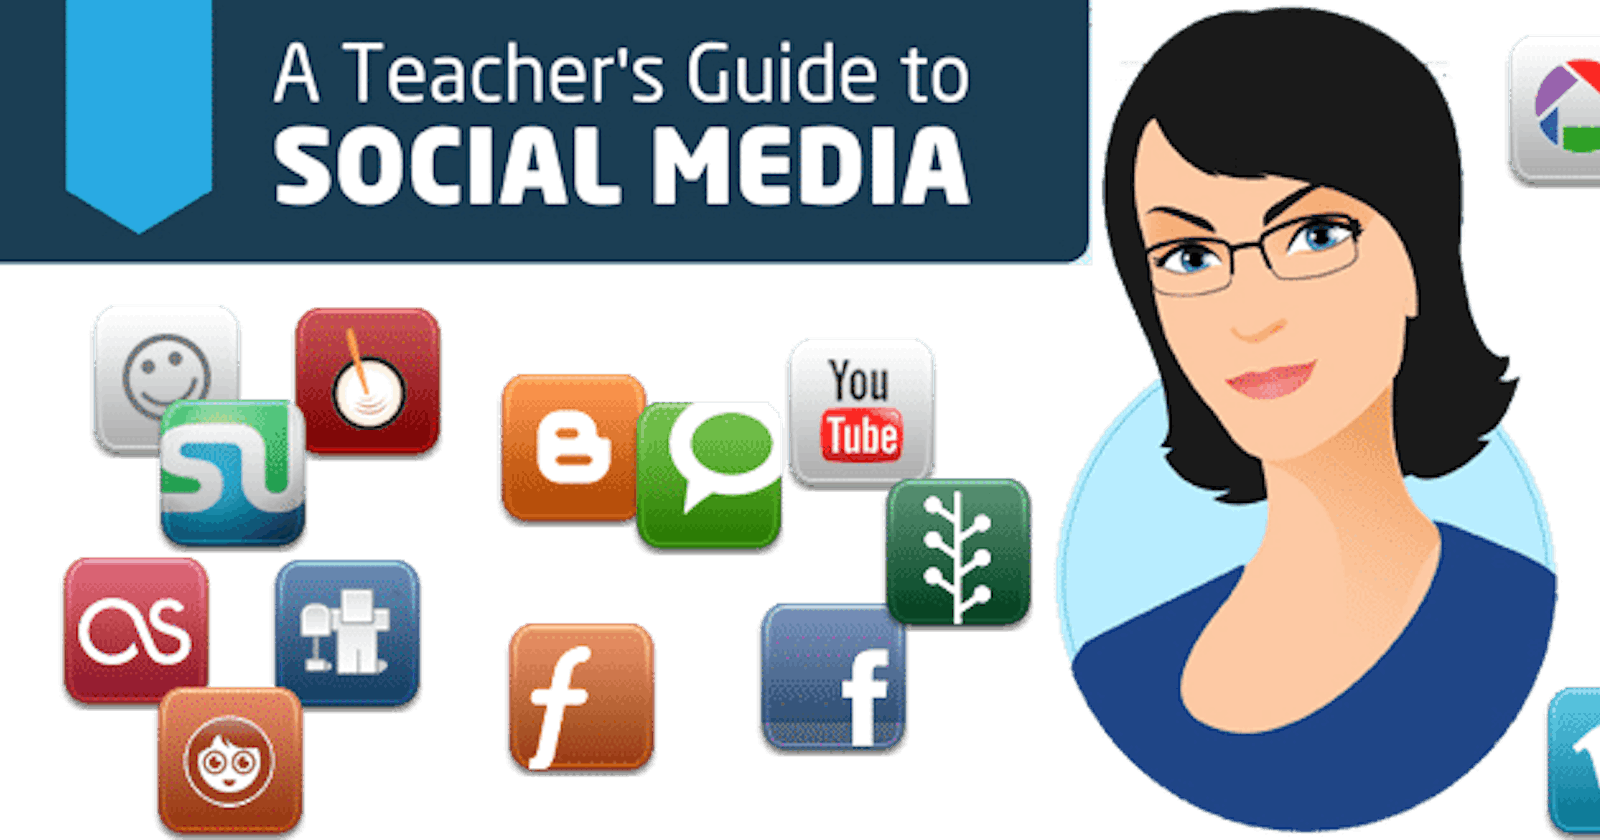 Importance of Social Media for Teachers